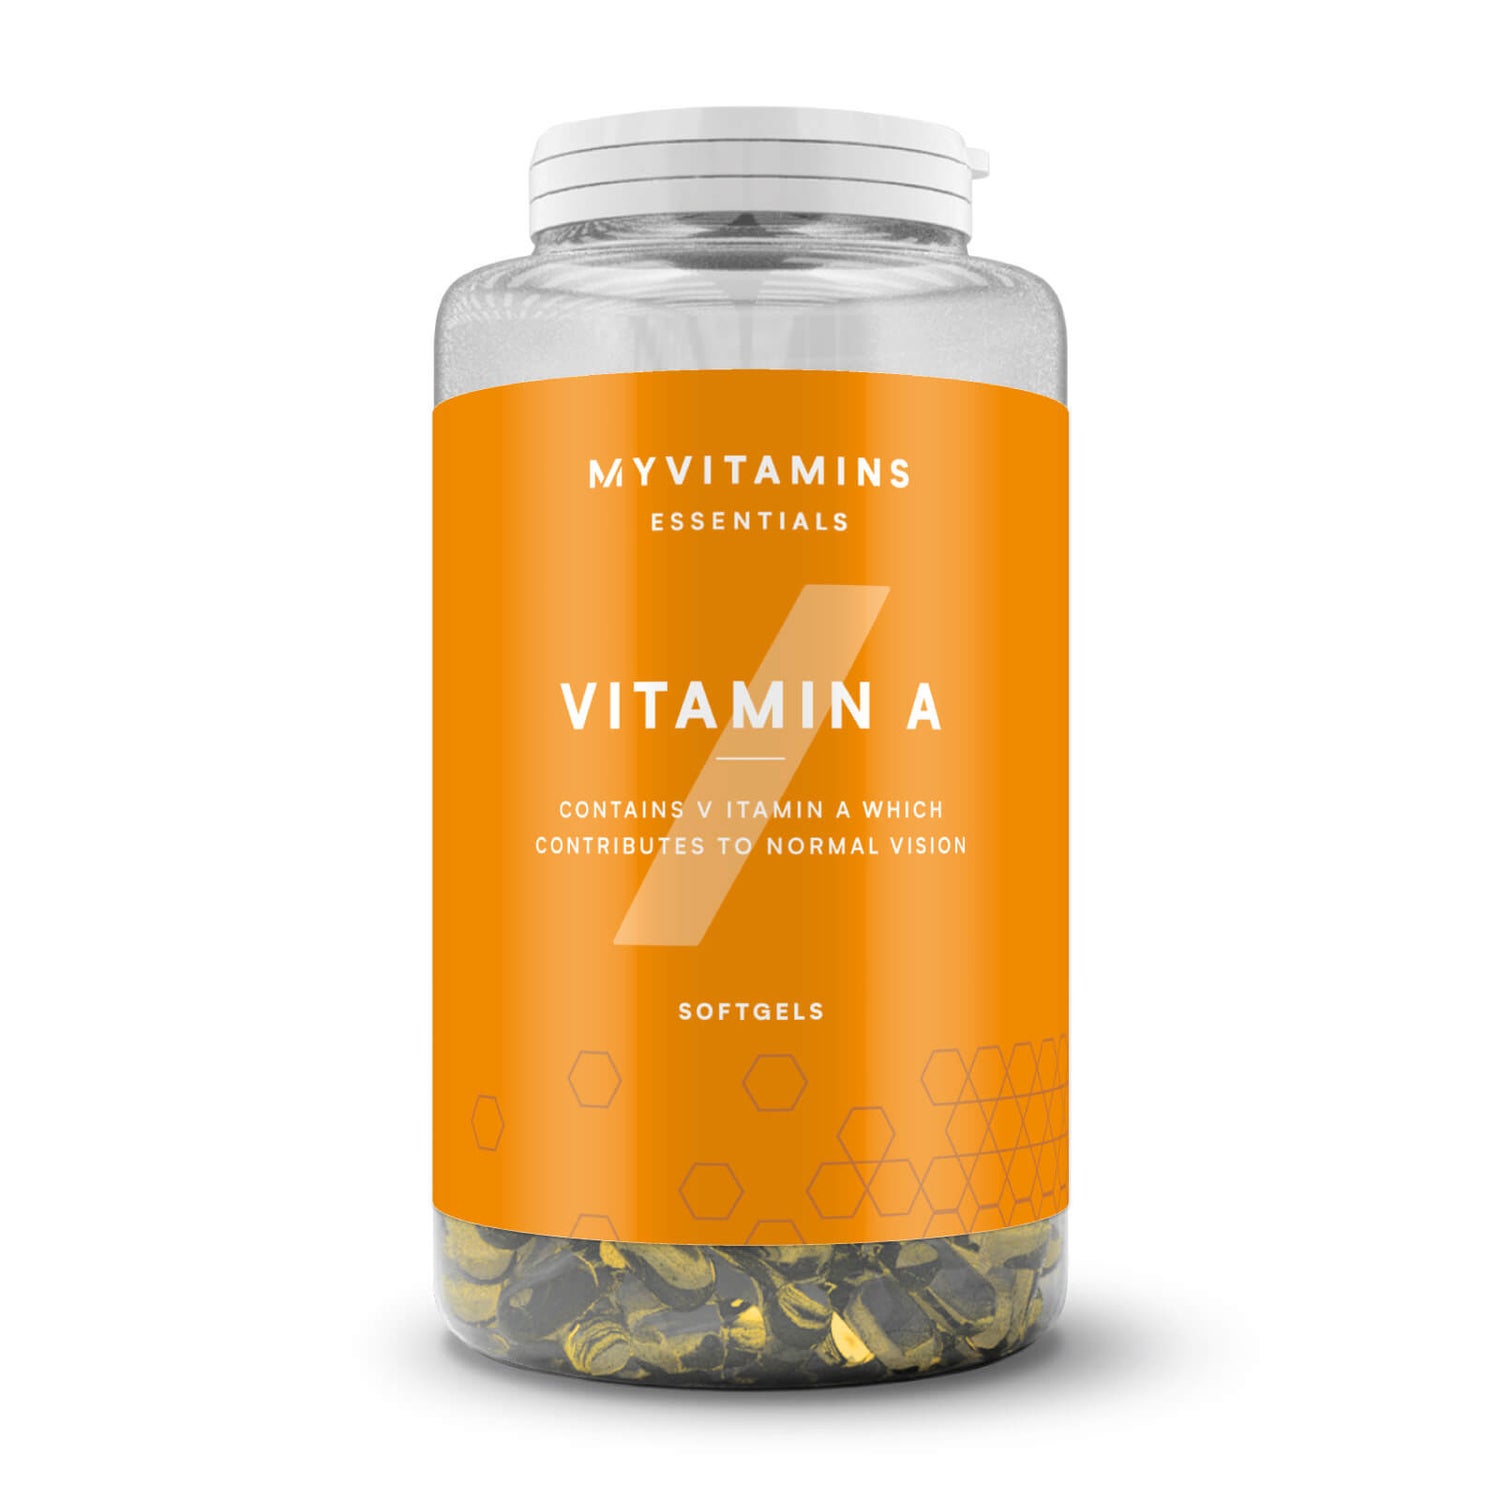 Myvitamins Vitamin A - 30softgels